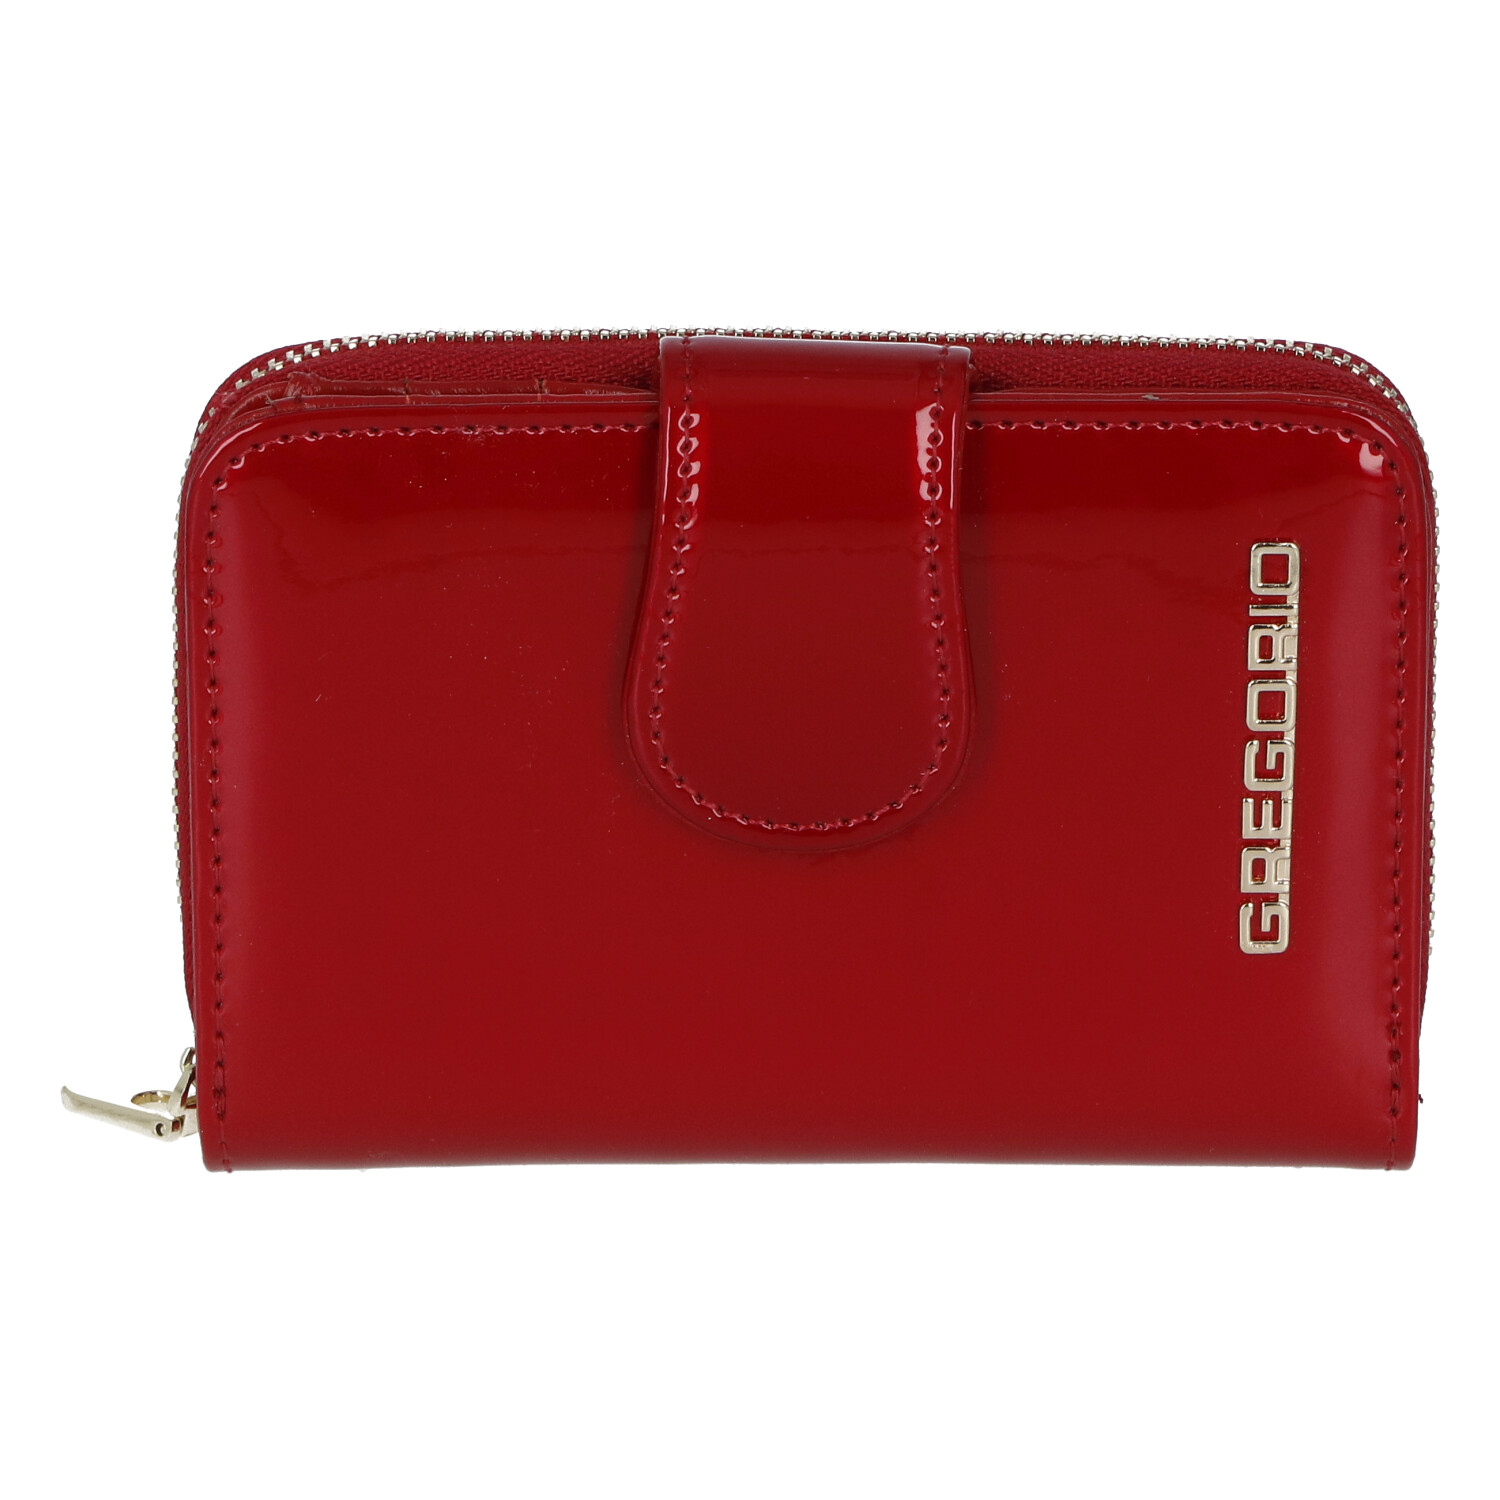 Lakovaná dámská peněženka s klopou Celine, červená